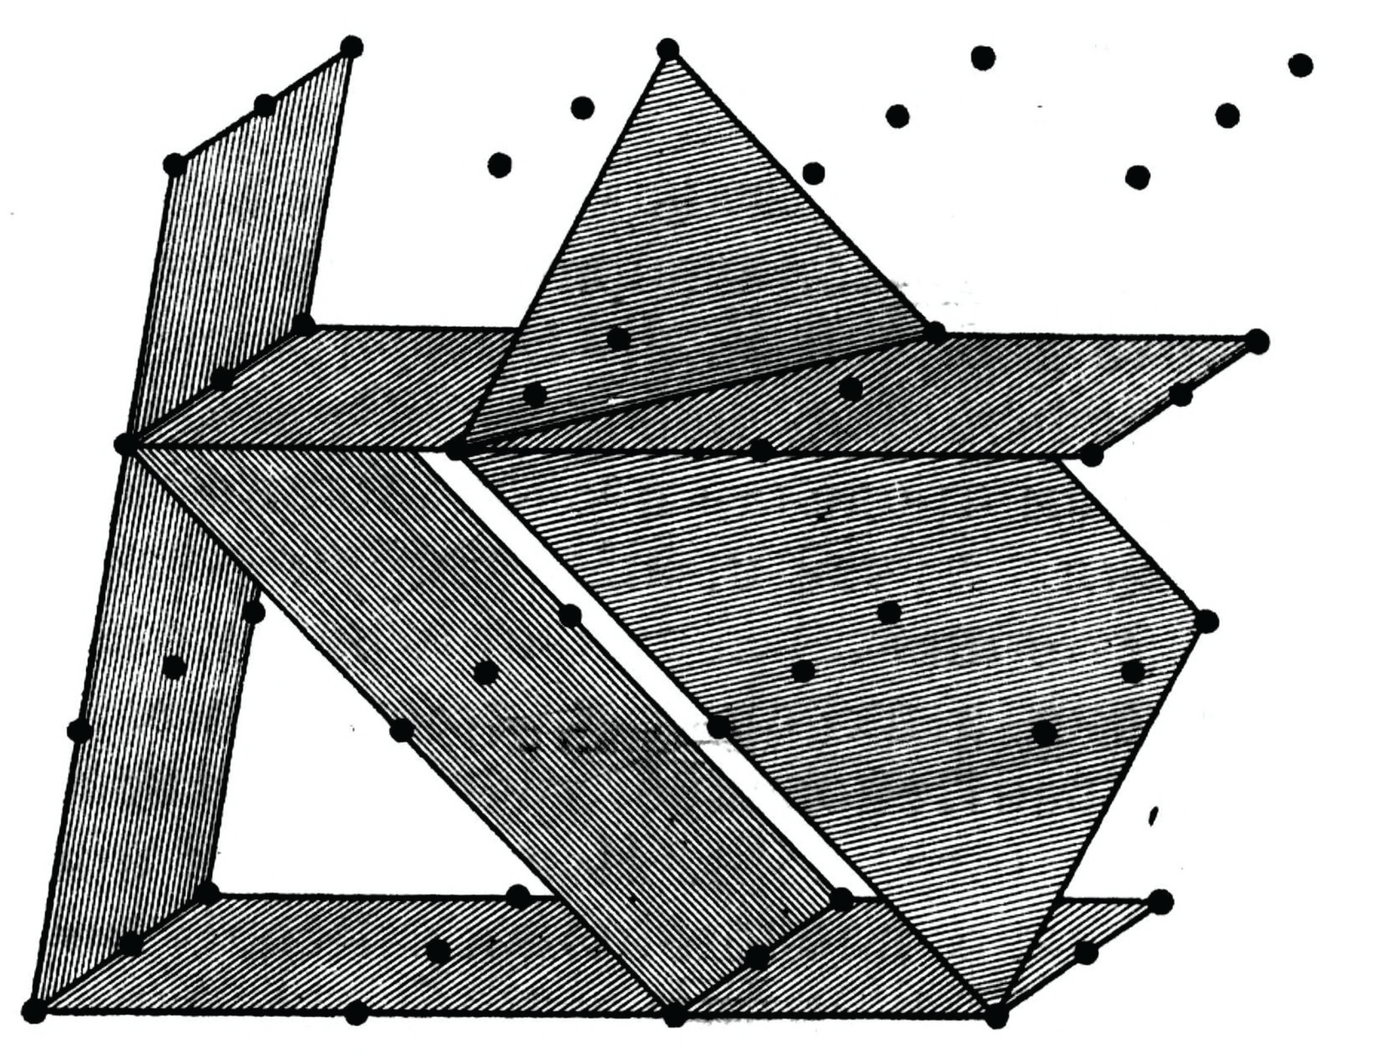 Joonis 43. Nii paiknevad tasandid kristallis. Näiteks on toodud lihtne kristall, mille ruumvõre igas punktis on üks aatom. On kujutatud mõned aatomeid läbivad eri orientatsiooniga tasandid.